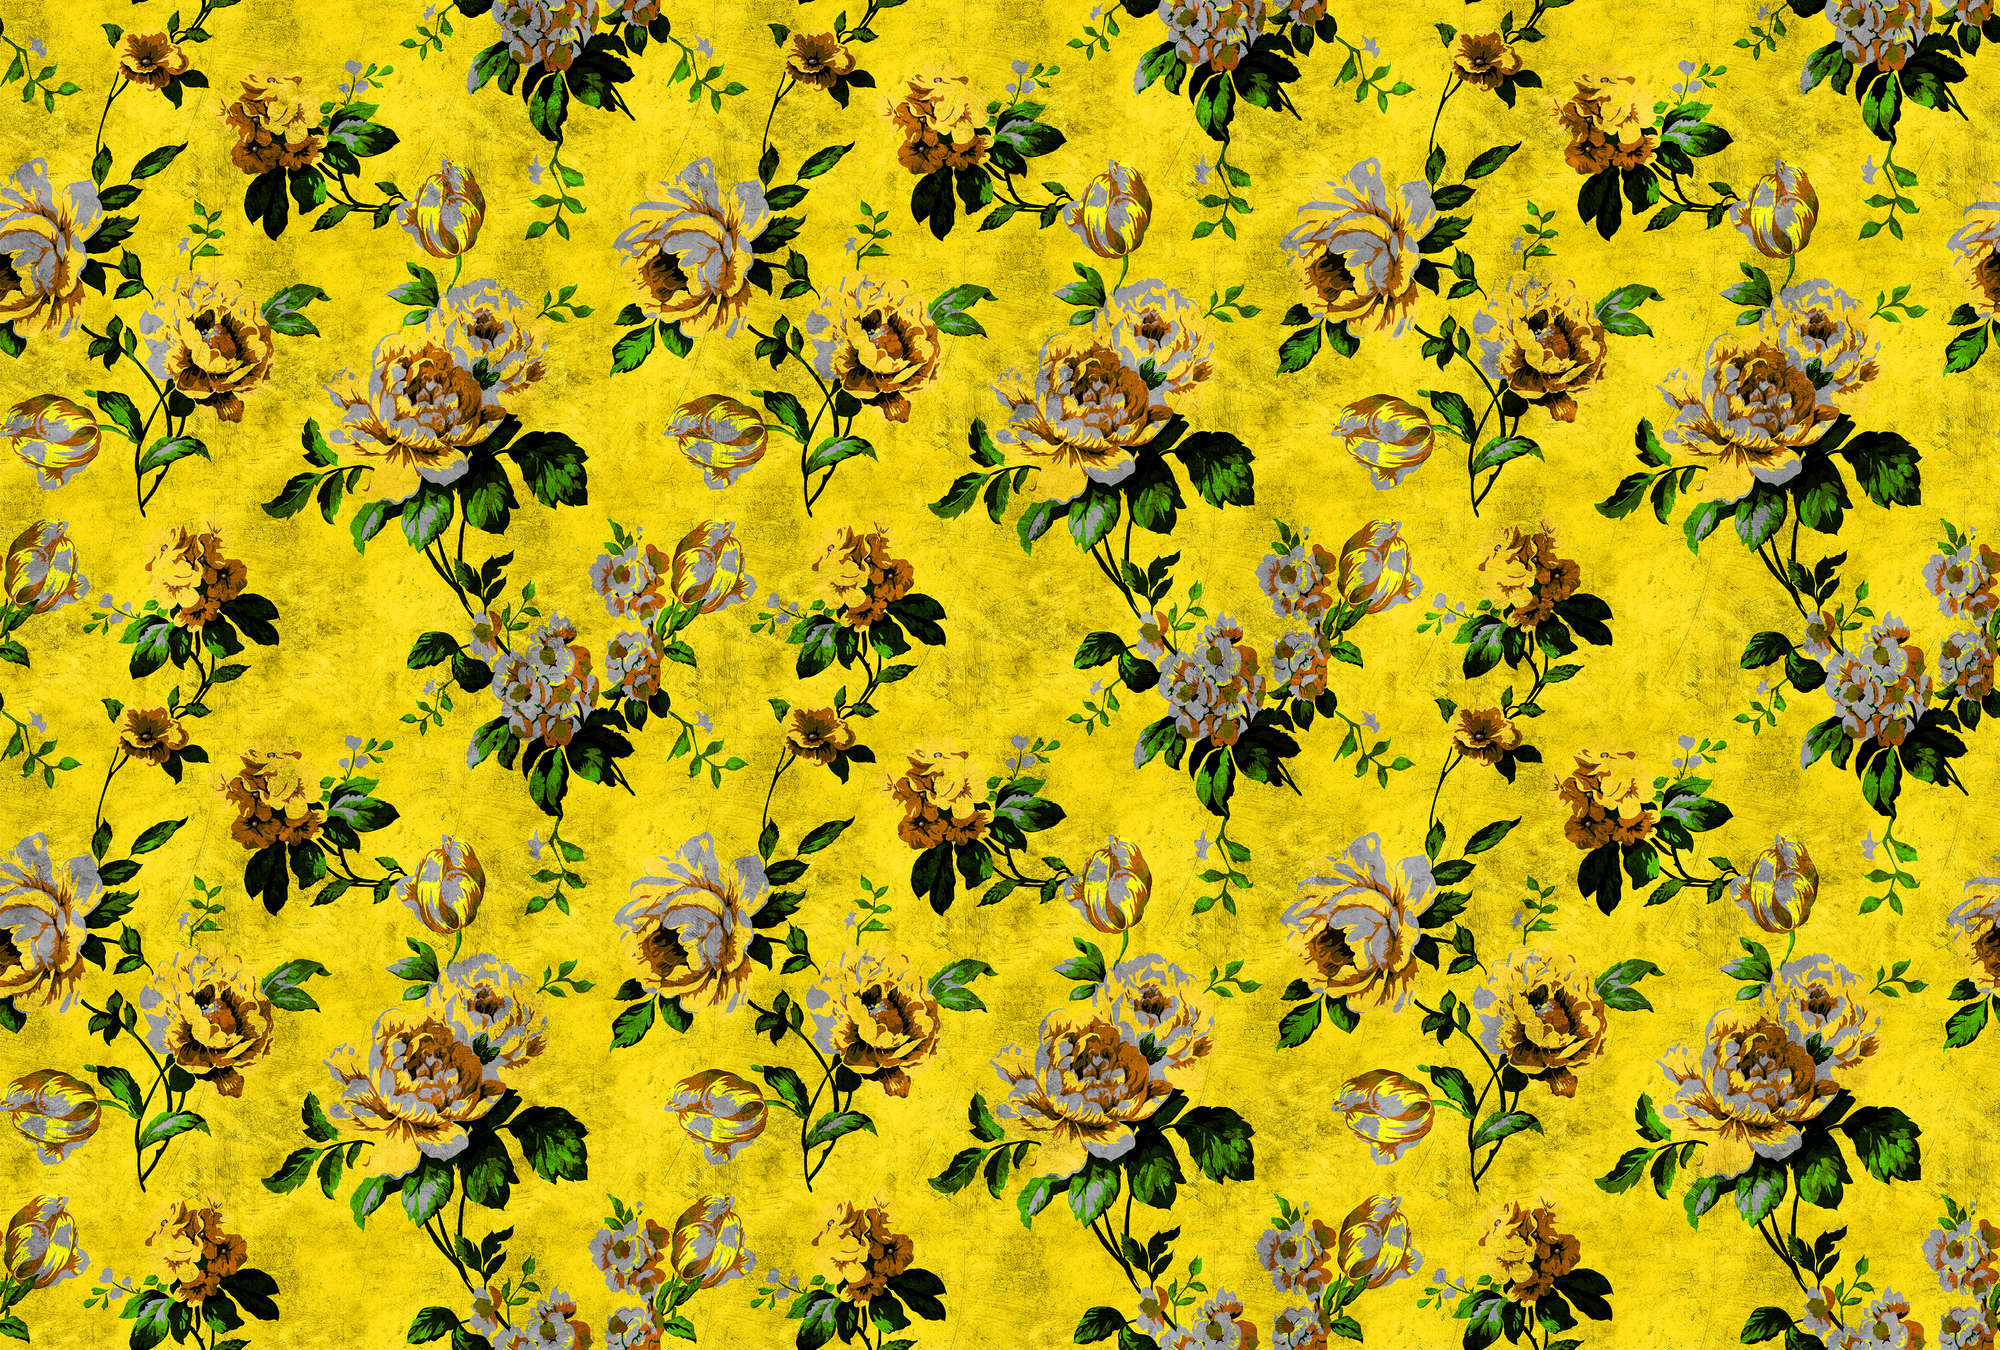             Wild roses 5 - Rosen Fototapete in kratzer Struktur im Retrolook, Gelb – Gelb, Grün | Mattes Glattvlies
        